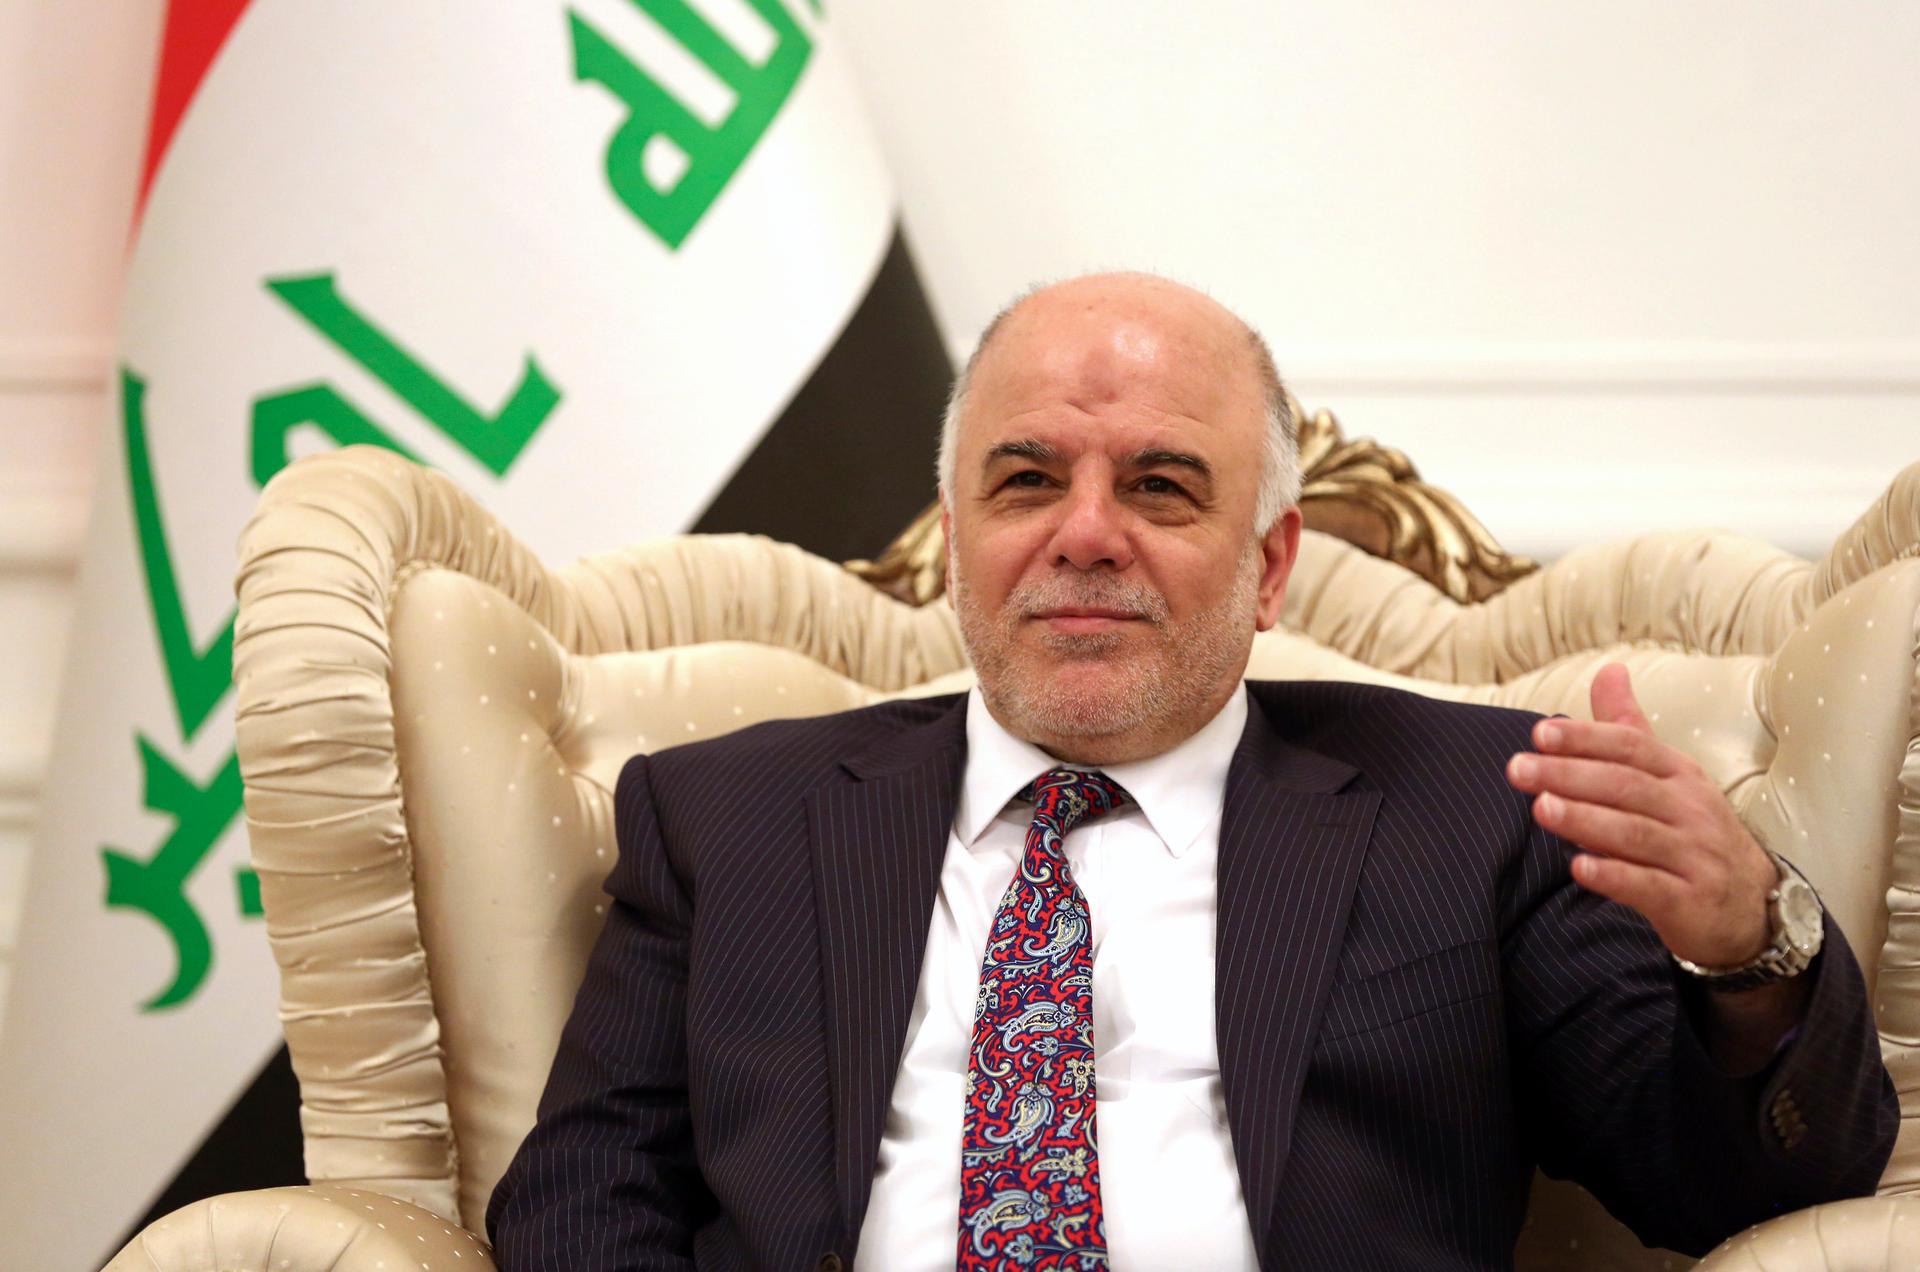 Iraqi Prime Minister-designate Haider al-Abadi, who was nominated by Iraq's president to replace Nouri al-Maliki.